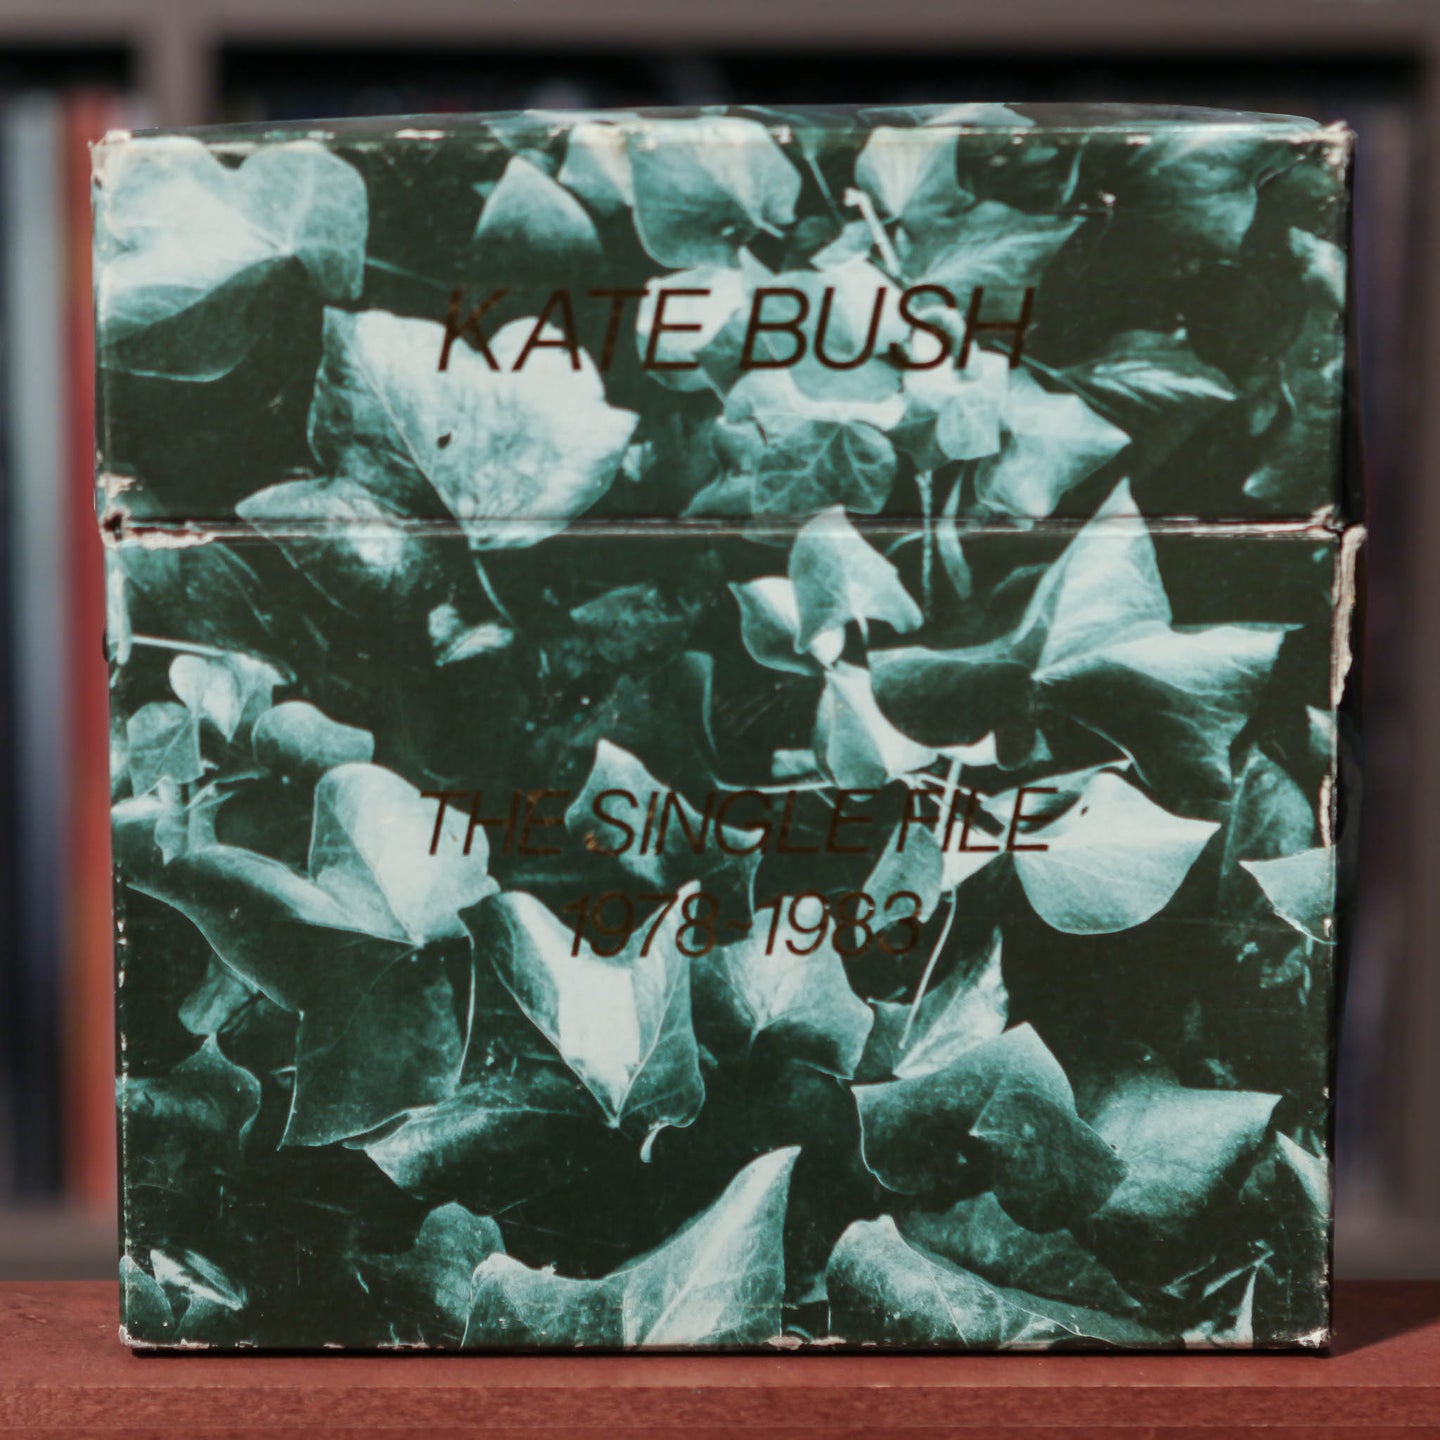 Kate Bush - The Single File 1978~1983 - 10 Vinyl - UK Import - 7